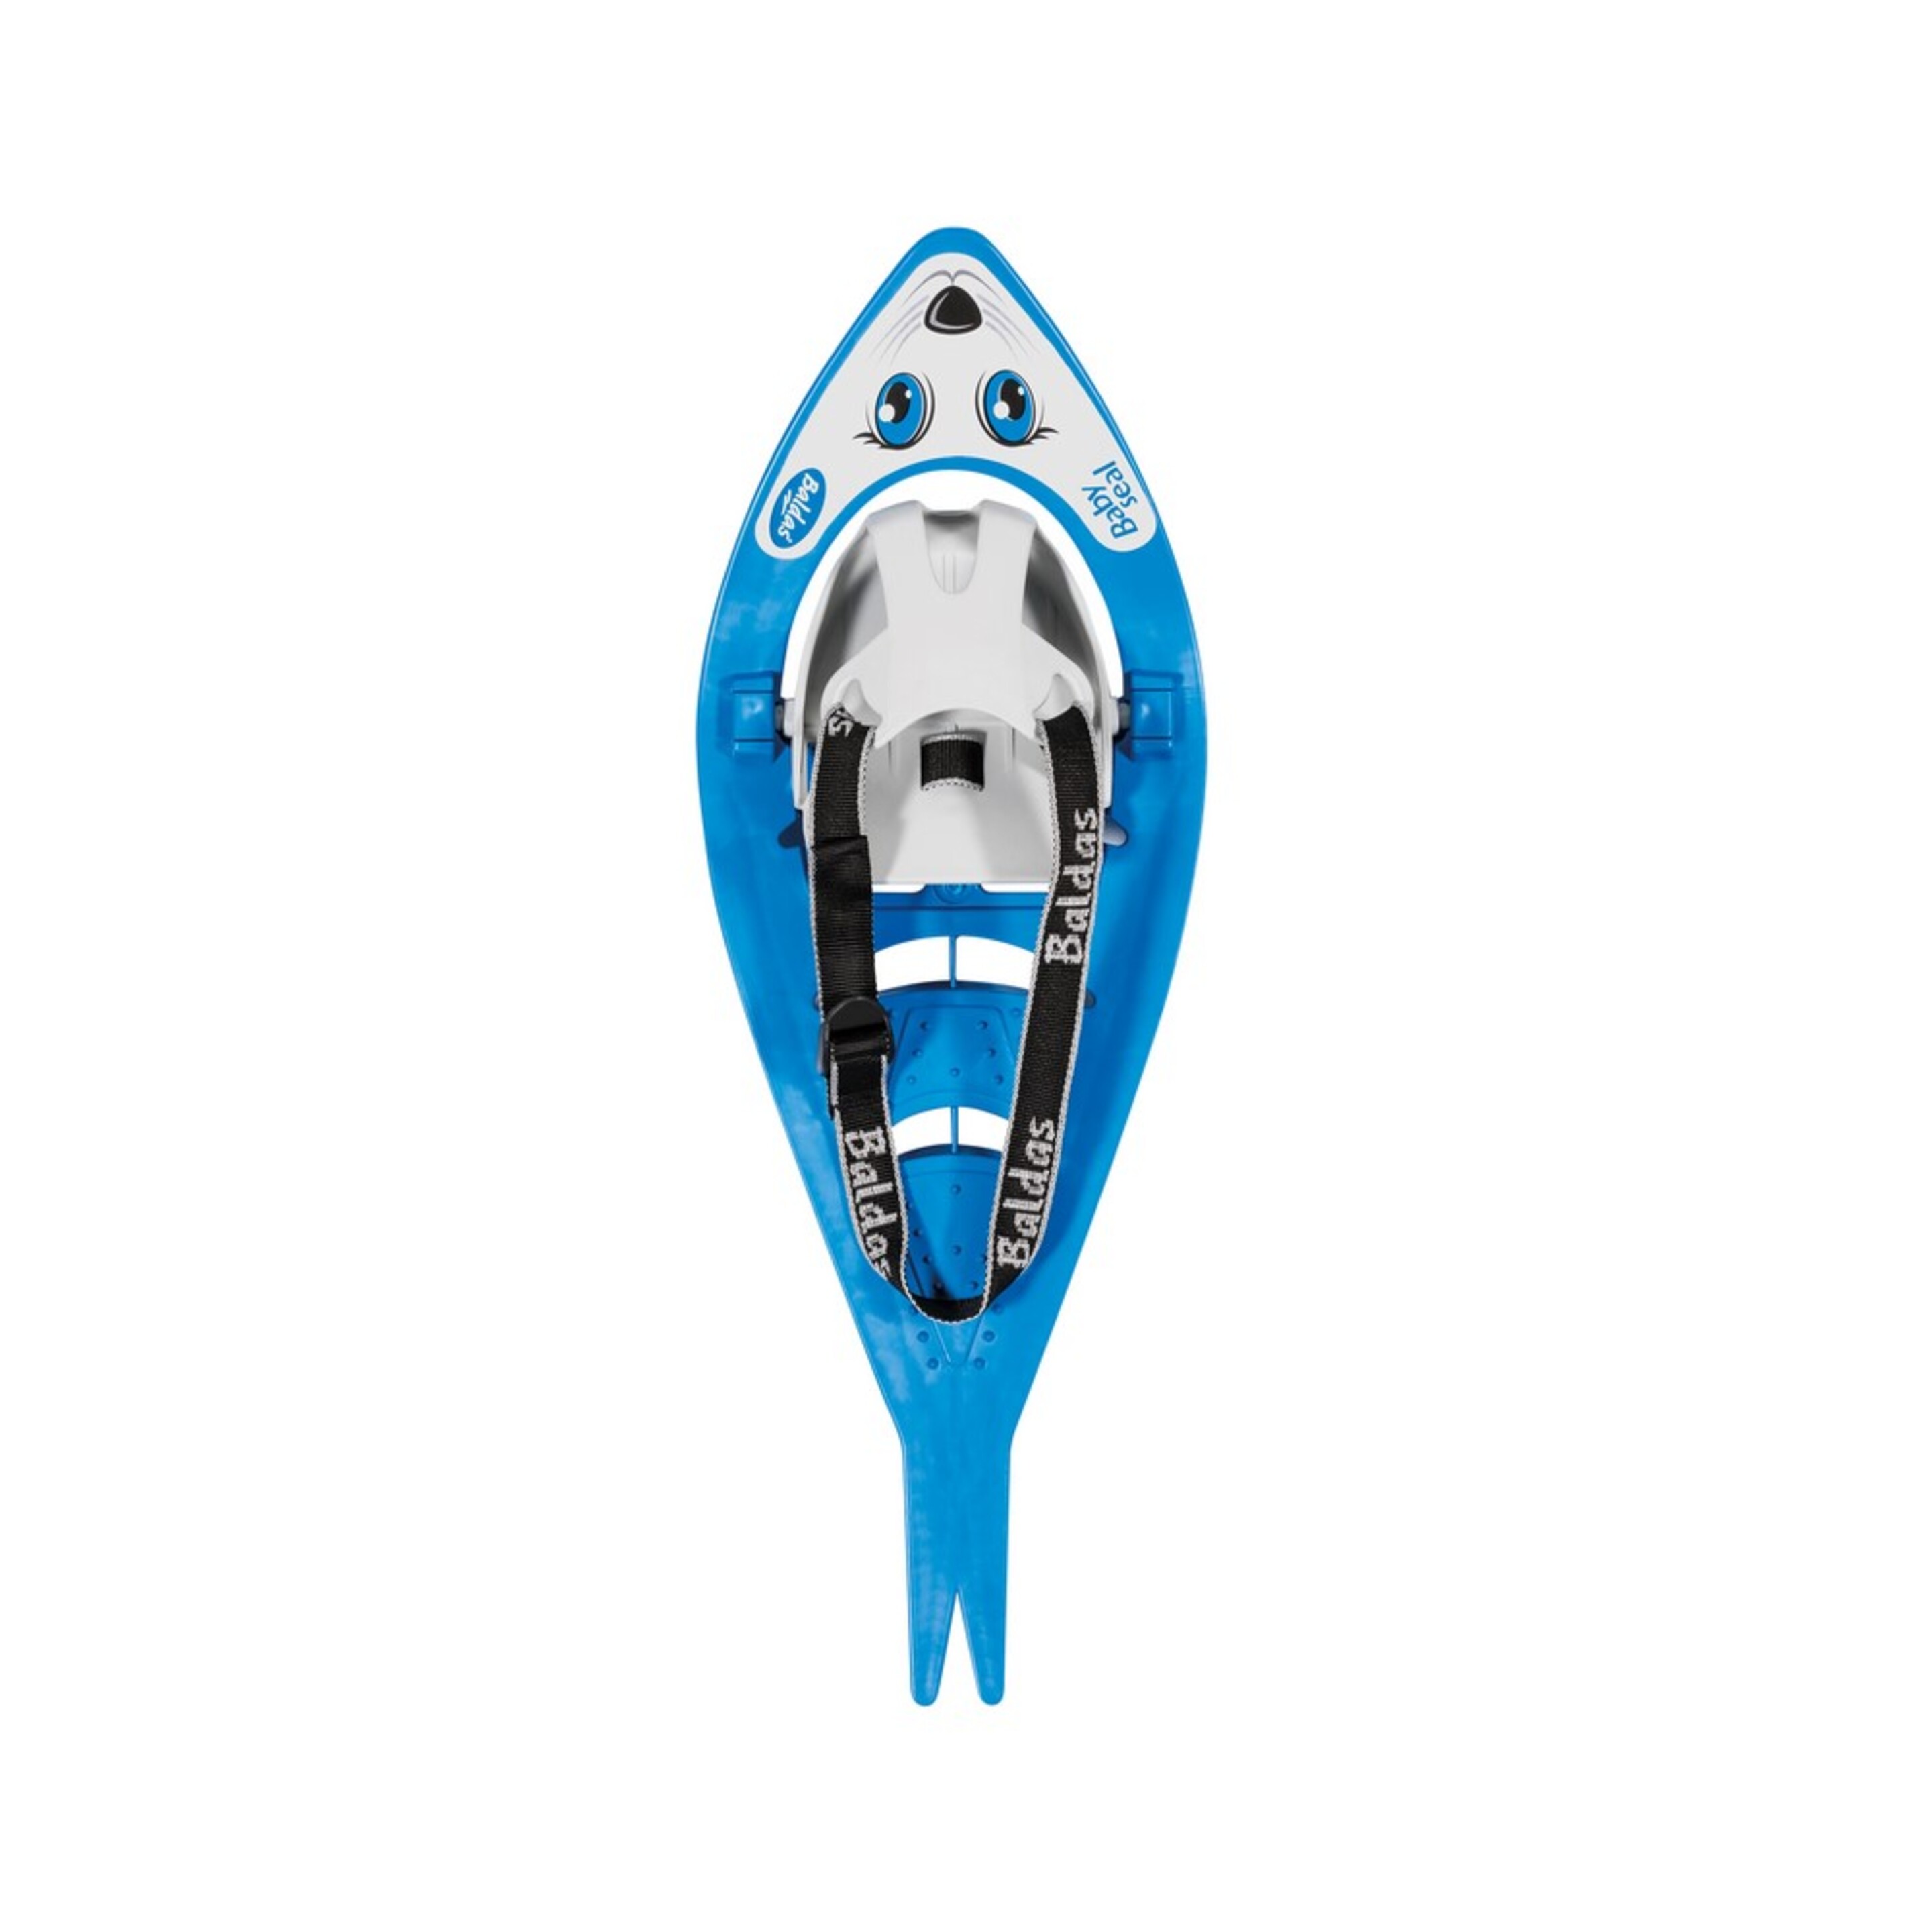 Raquetas De Nieve Snowshoes Baby Seal De Ferrino - Azul  MKP